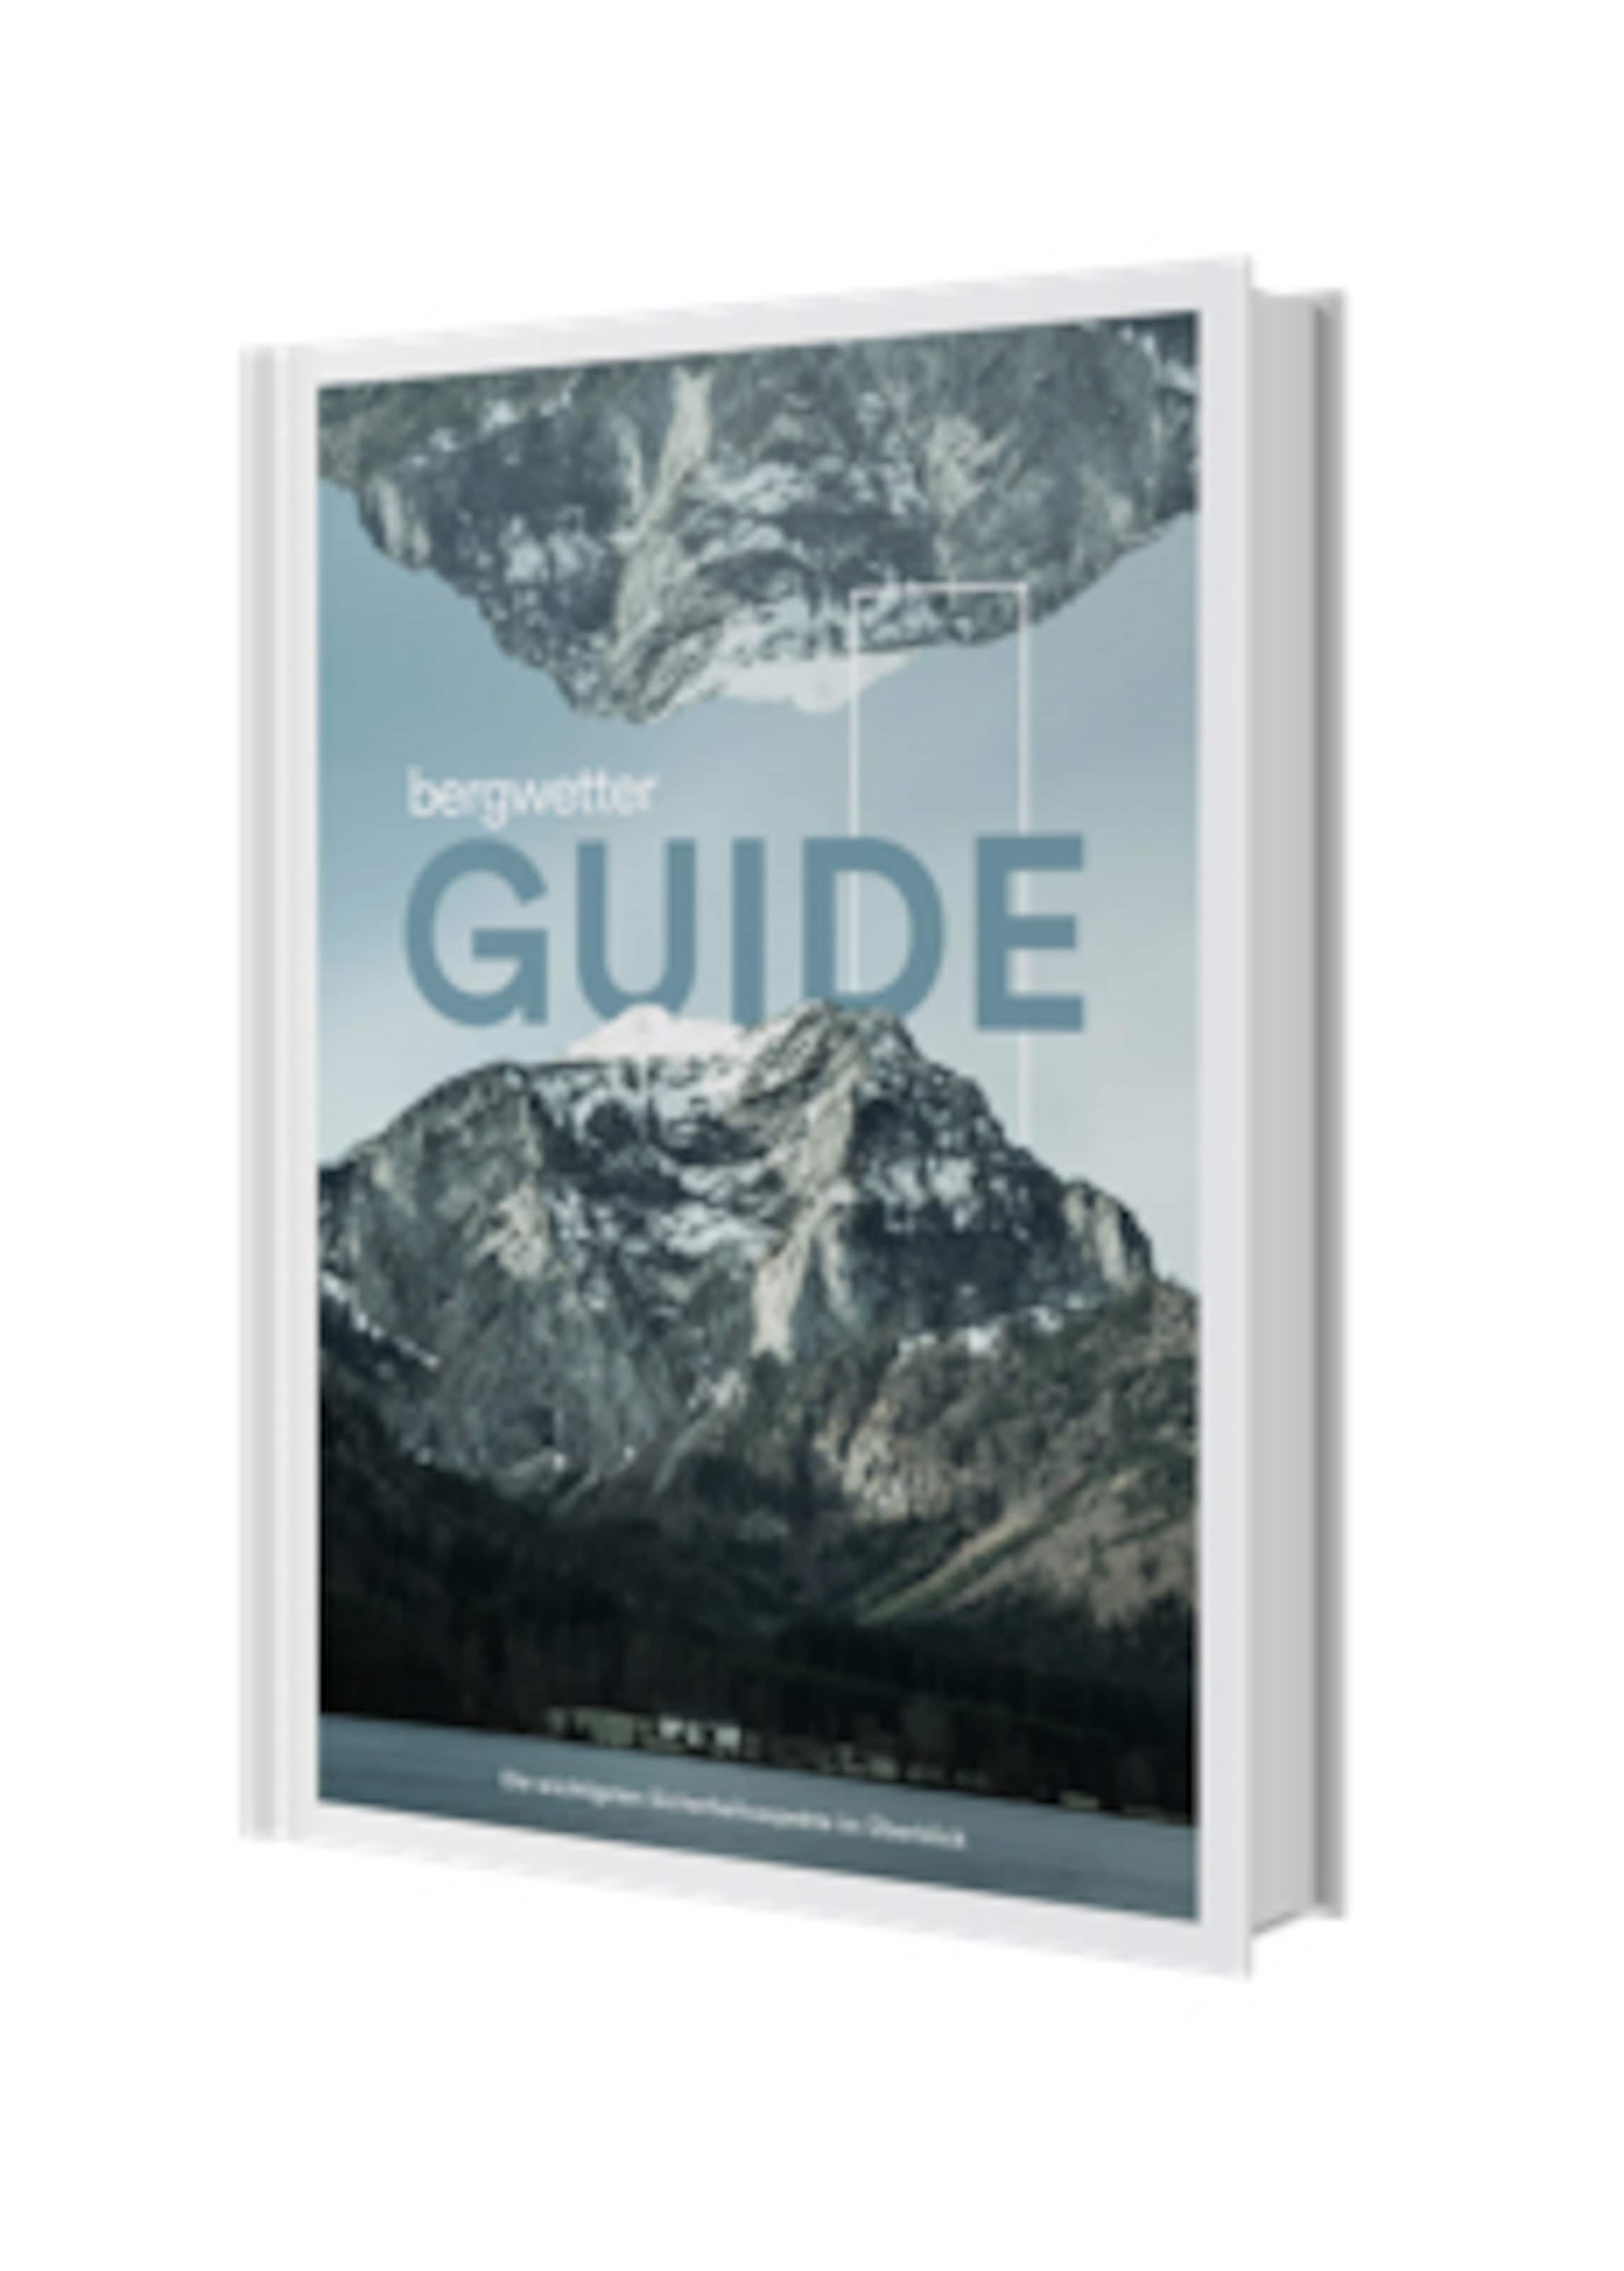 Bergwetter-Guide Ebook Cover